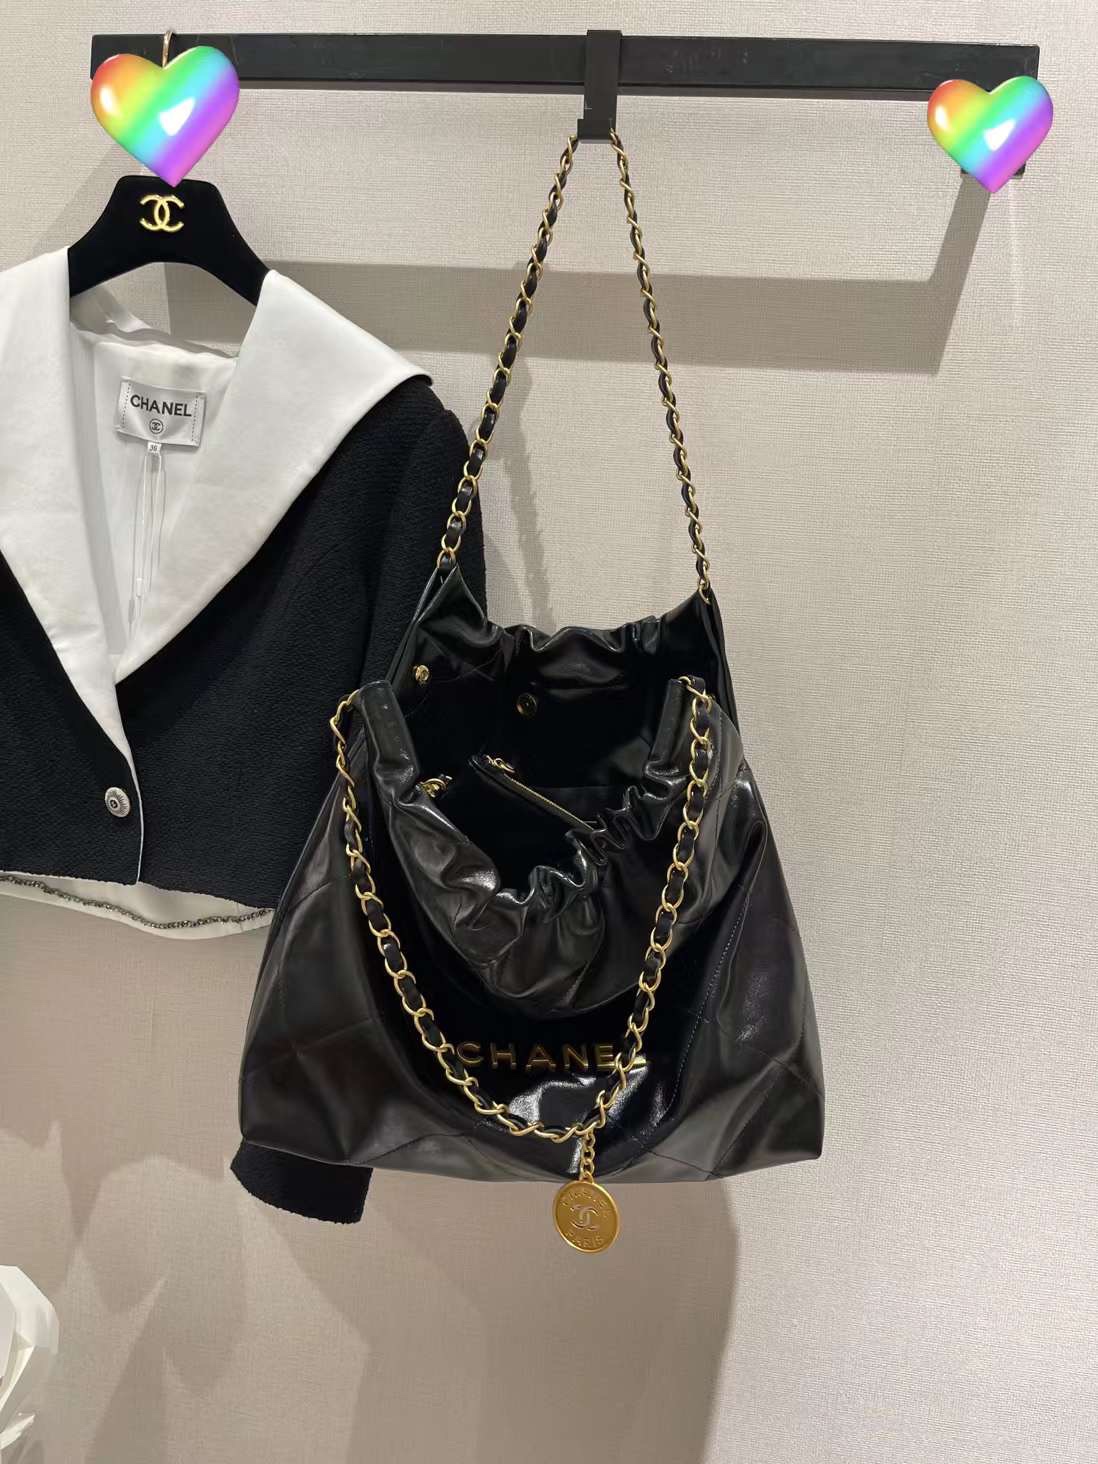 【￥2220/2700】香奈儿新款包包 Chanel黑色金字母抽绳链条单肩包购物袋